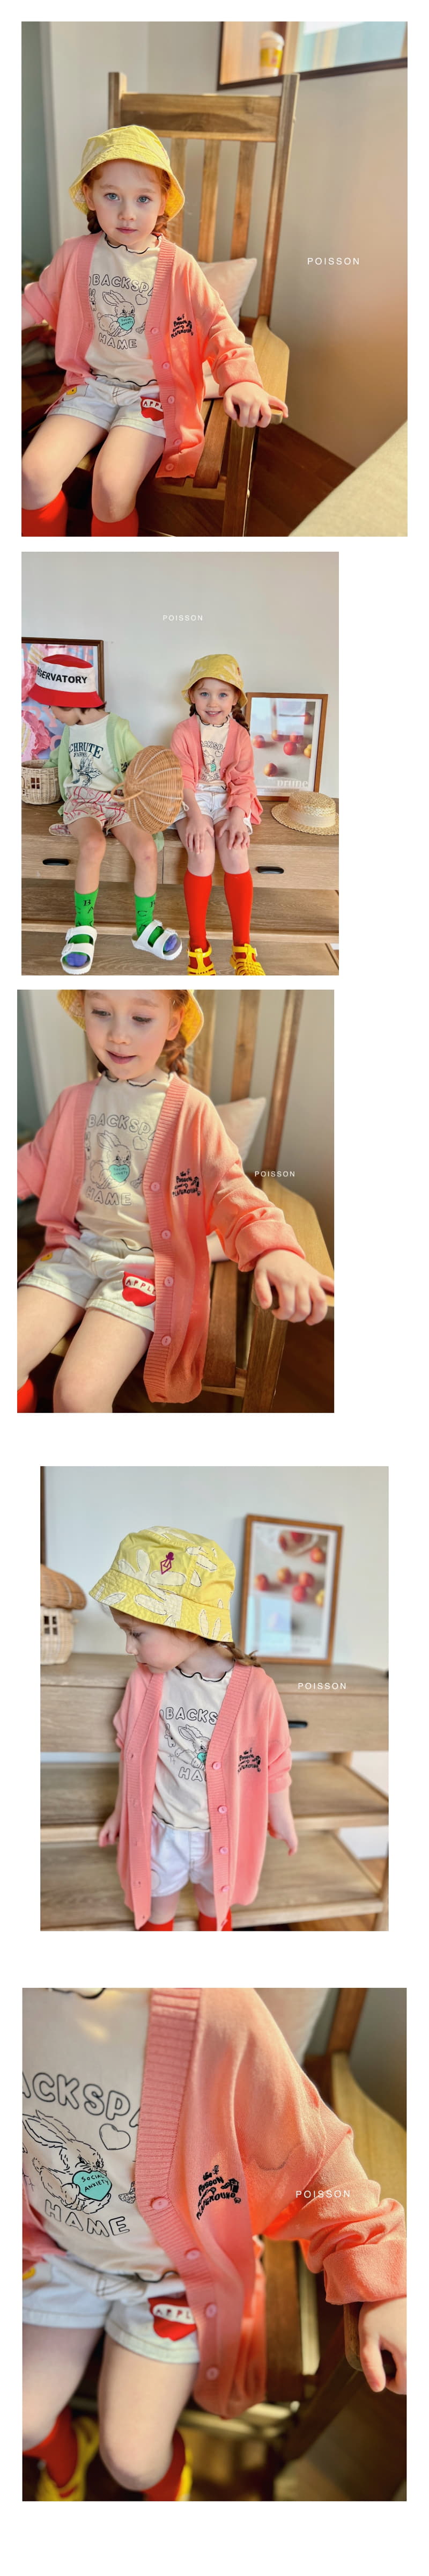 Poisson - Korean Children Fashion - #todddlerfashion - Summer Play Cardigan - 3